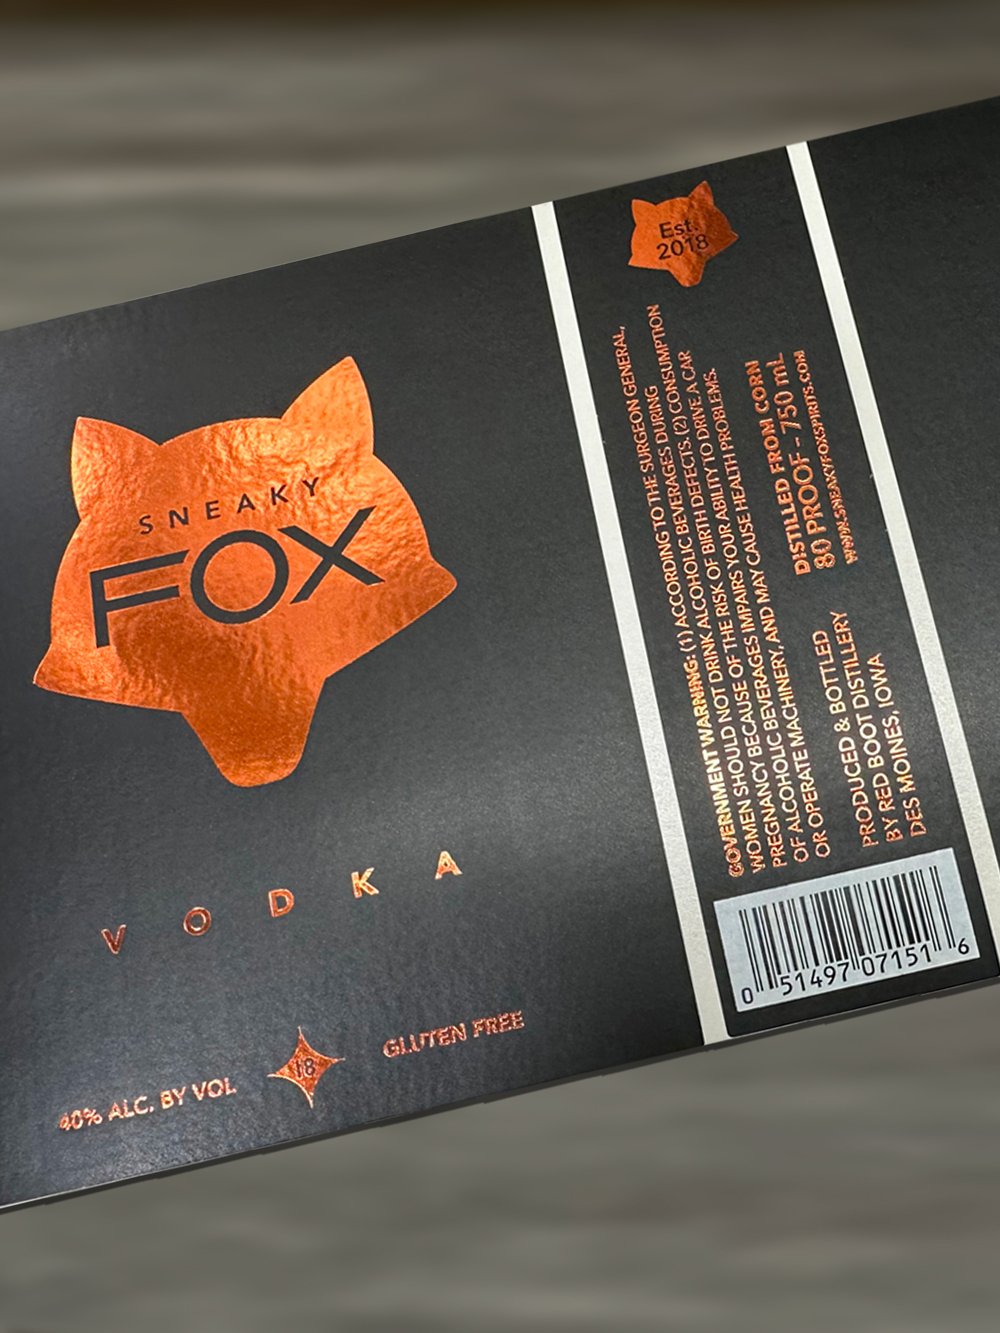 Custom-Label-Manufacturers-Chicago-Liquor-Bottles-Sneaky-Fox-2.jpg